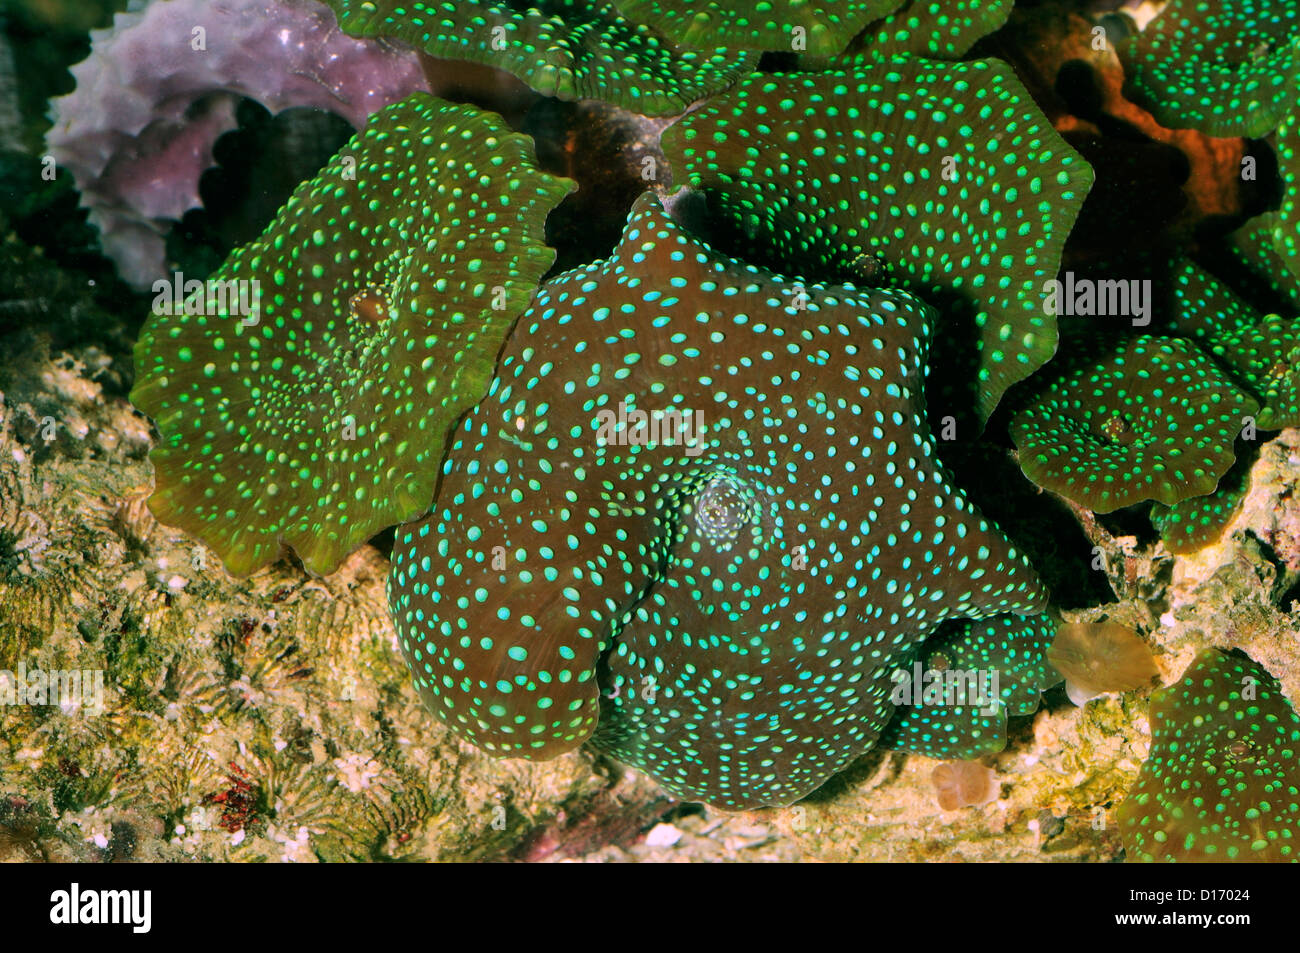 Green Mushrooms Discosoma sp., Discosomatidae, Indo-pacific ocean Stock Photo